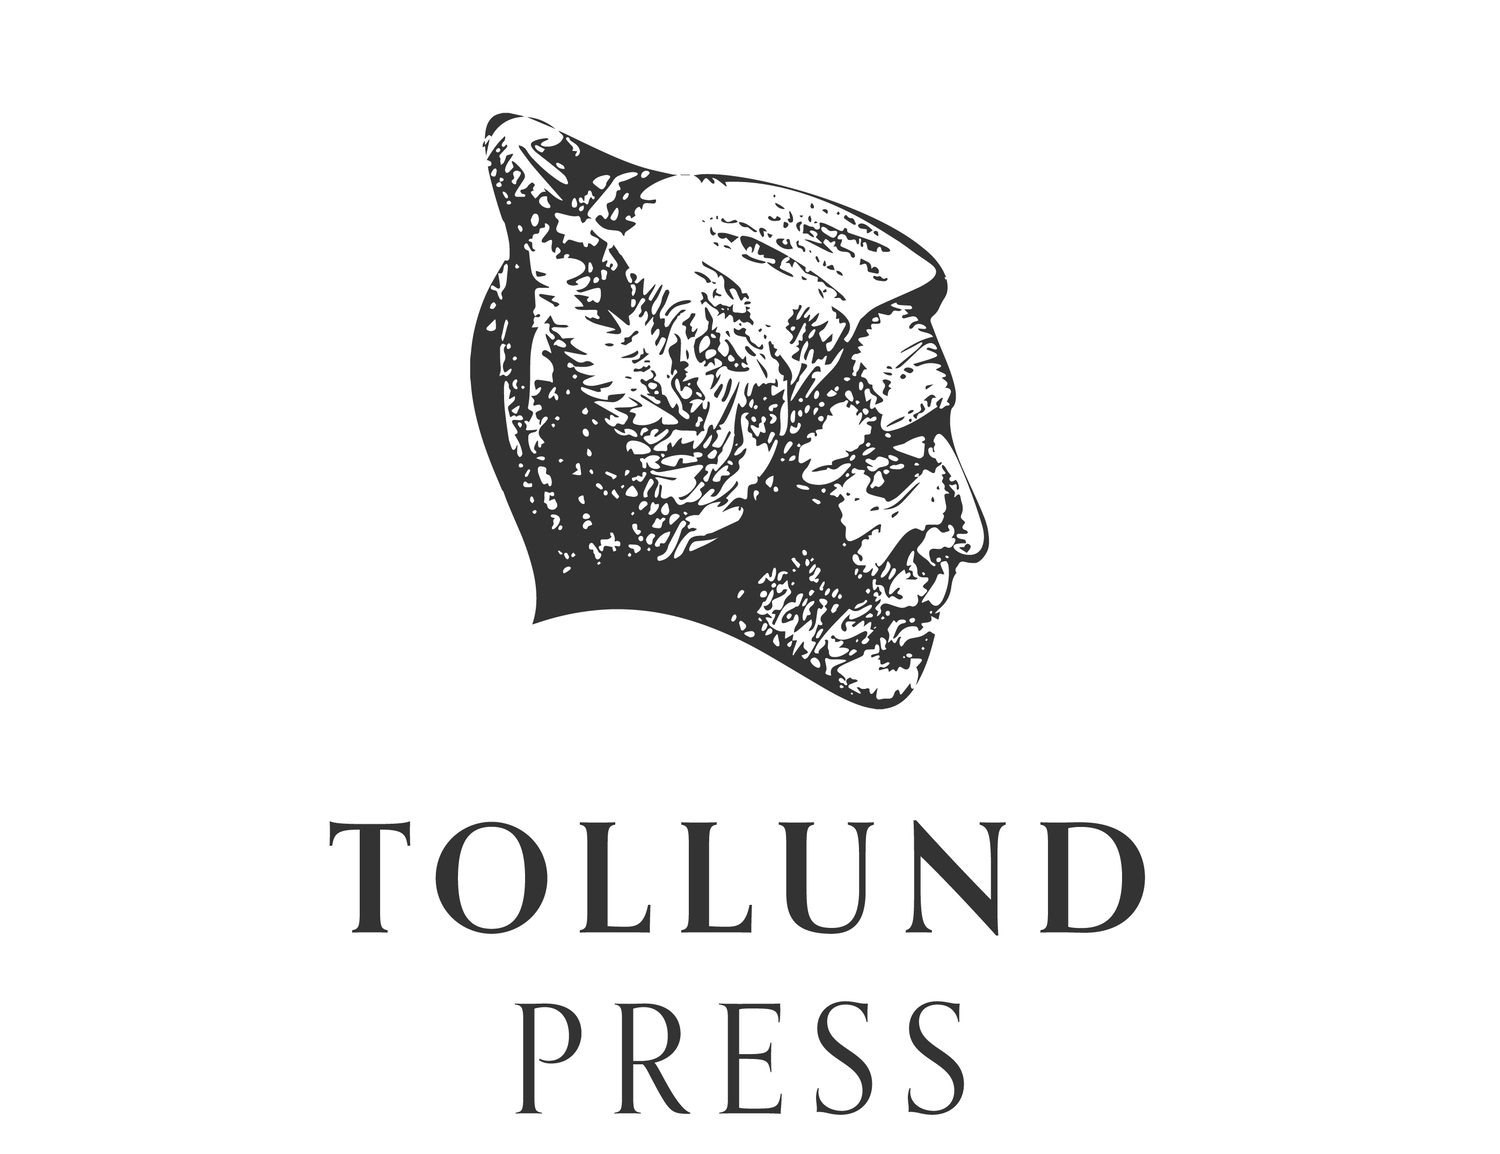 TOLLUND PRESS